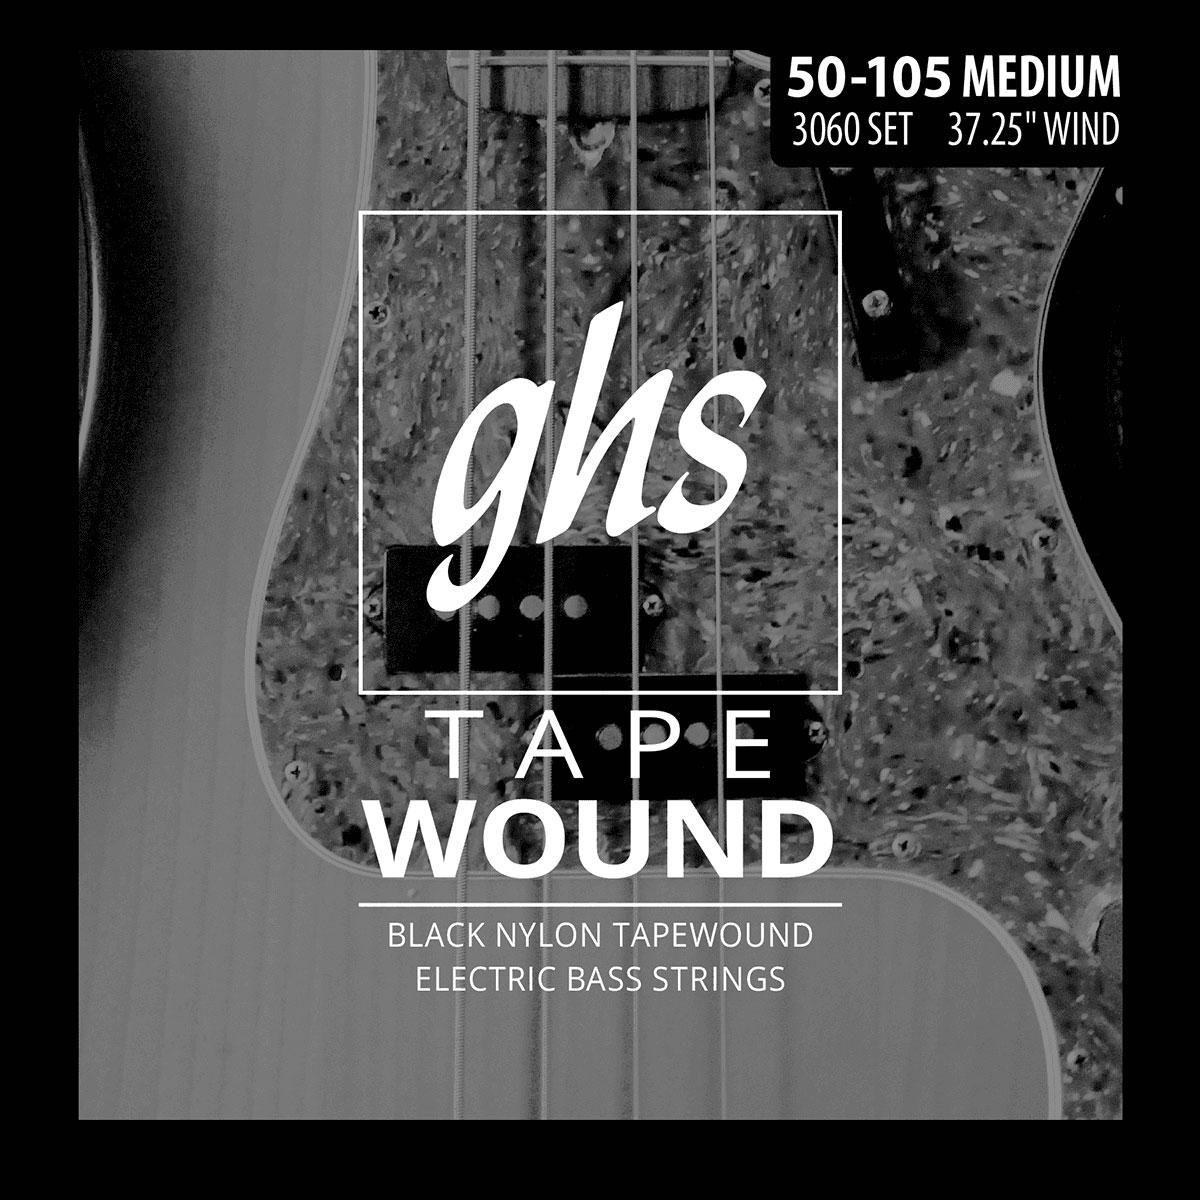 GHS 3060 TAPE WOUND MEDIUM 50-105